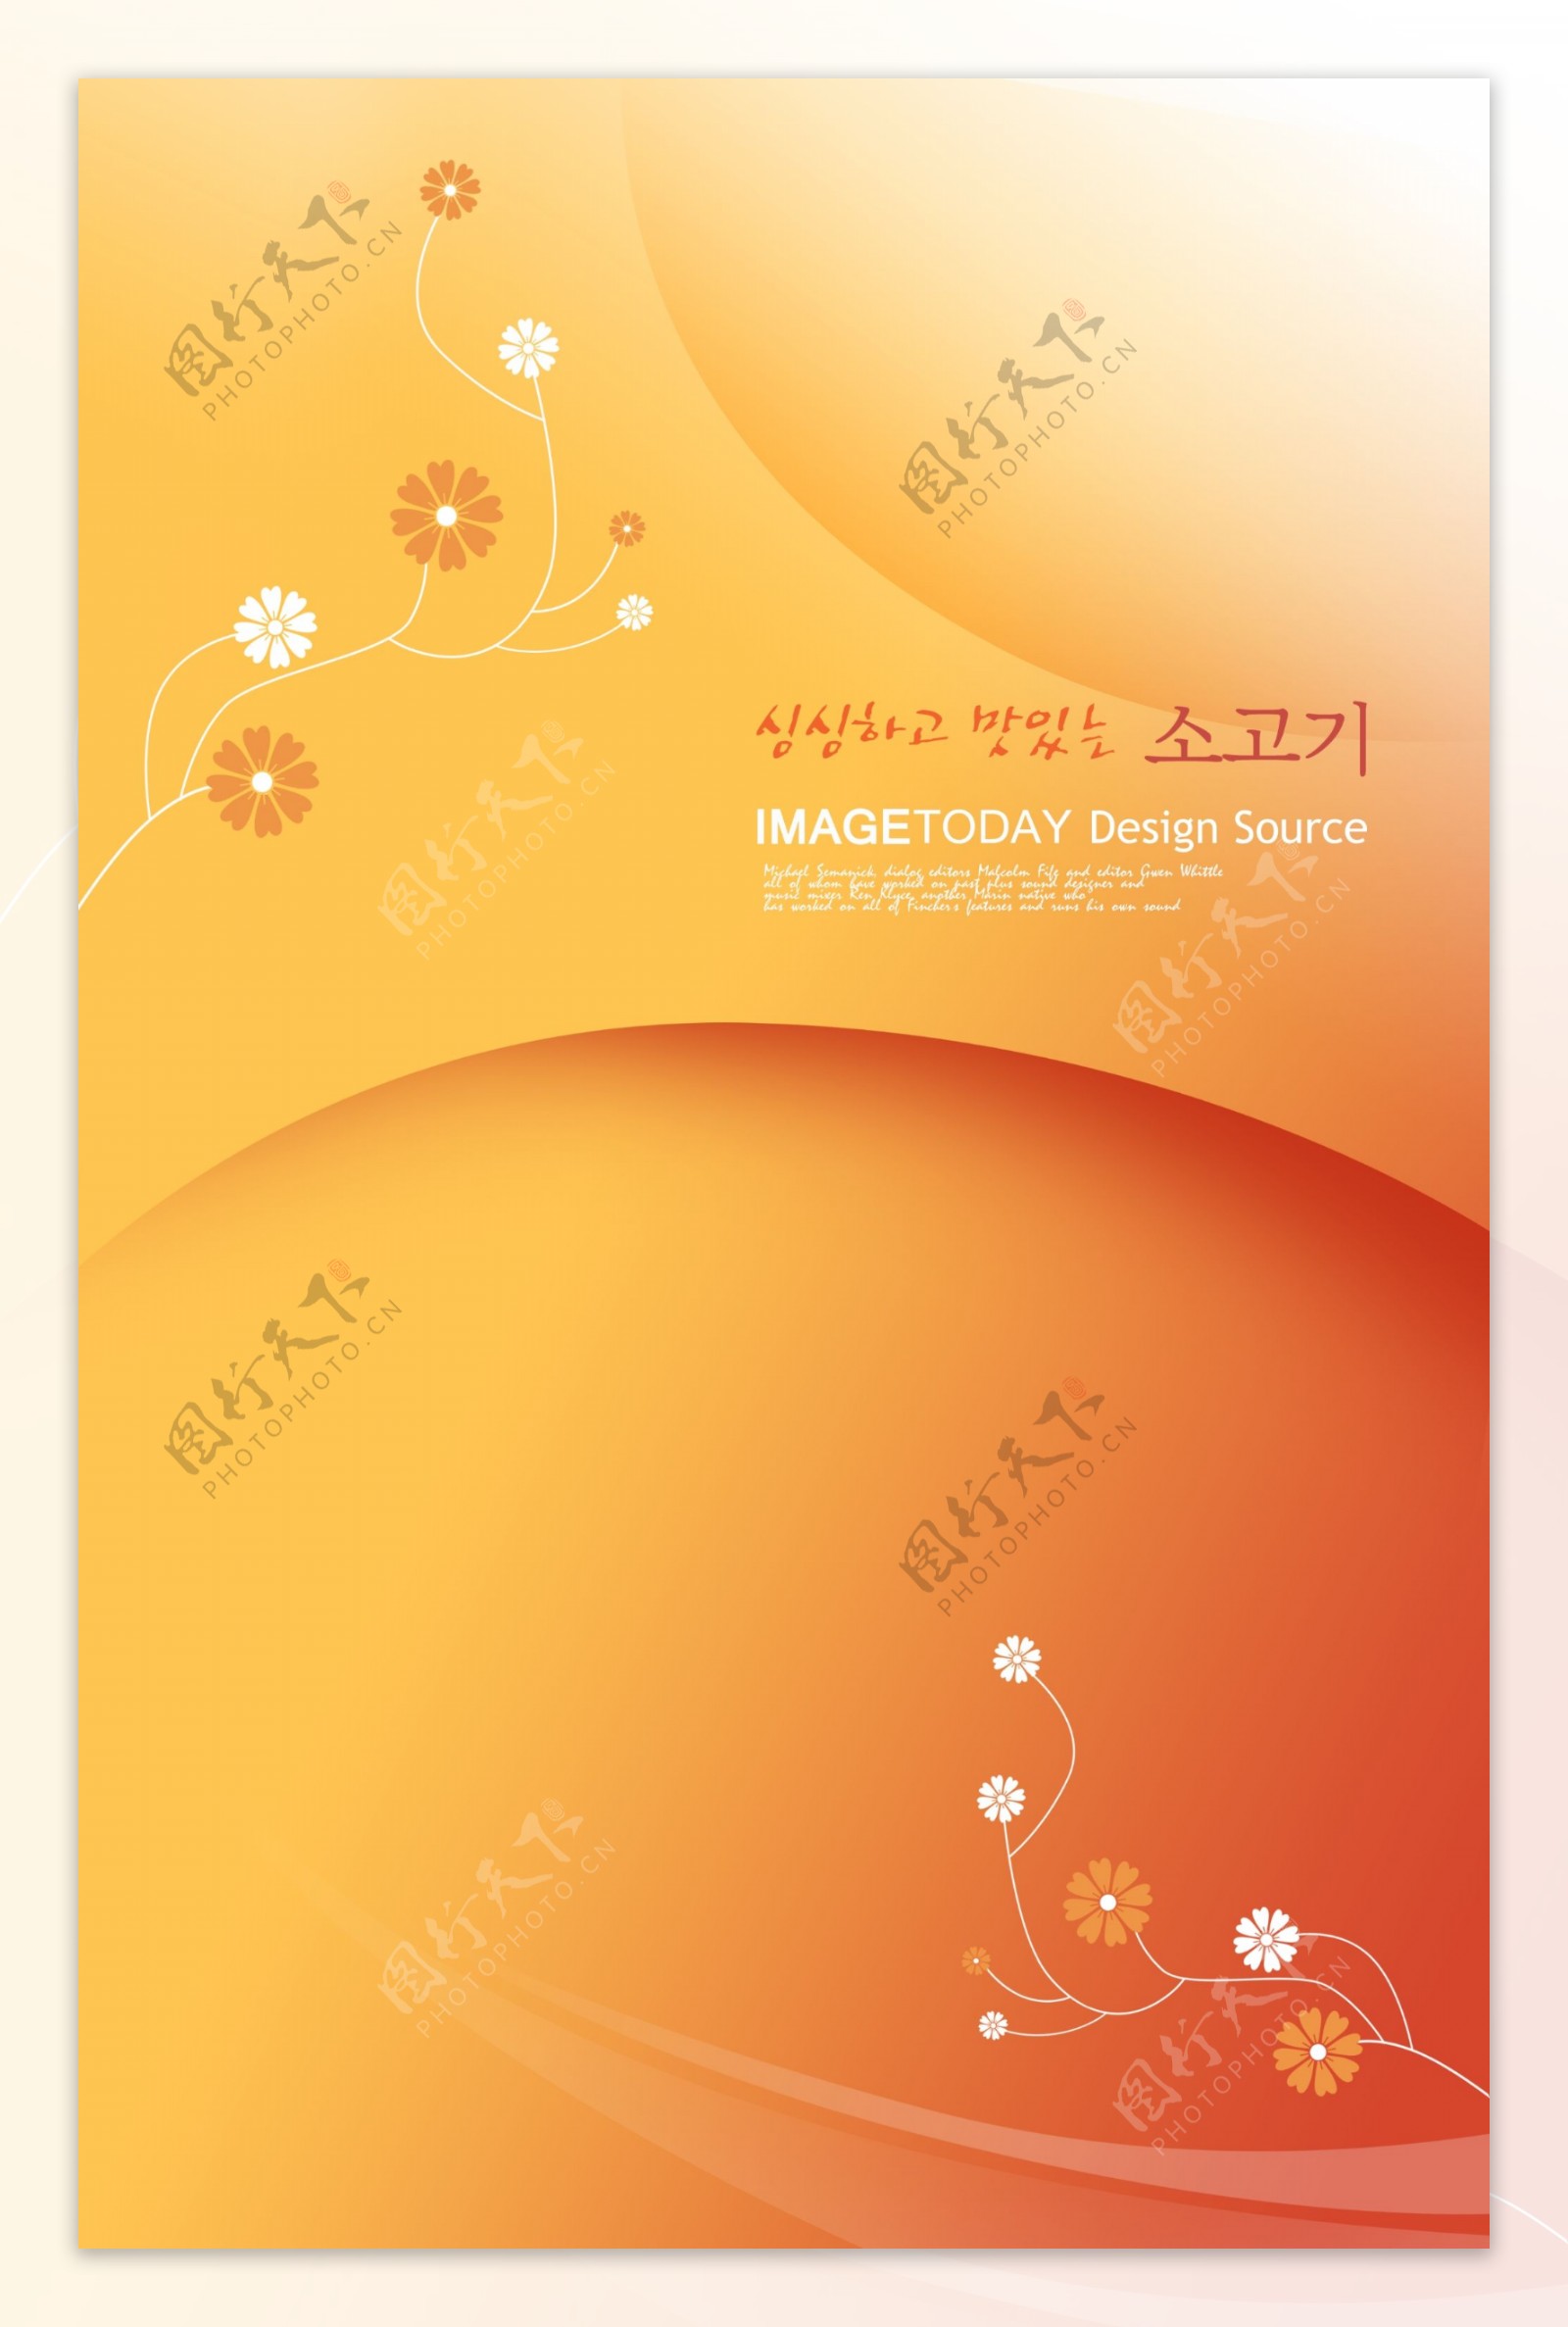 橙色圆弧小花韩式背景